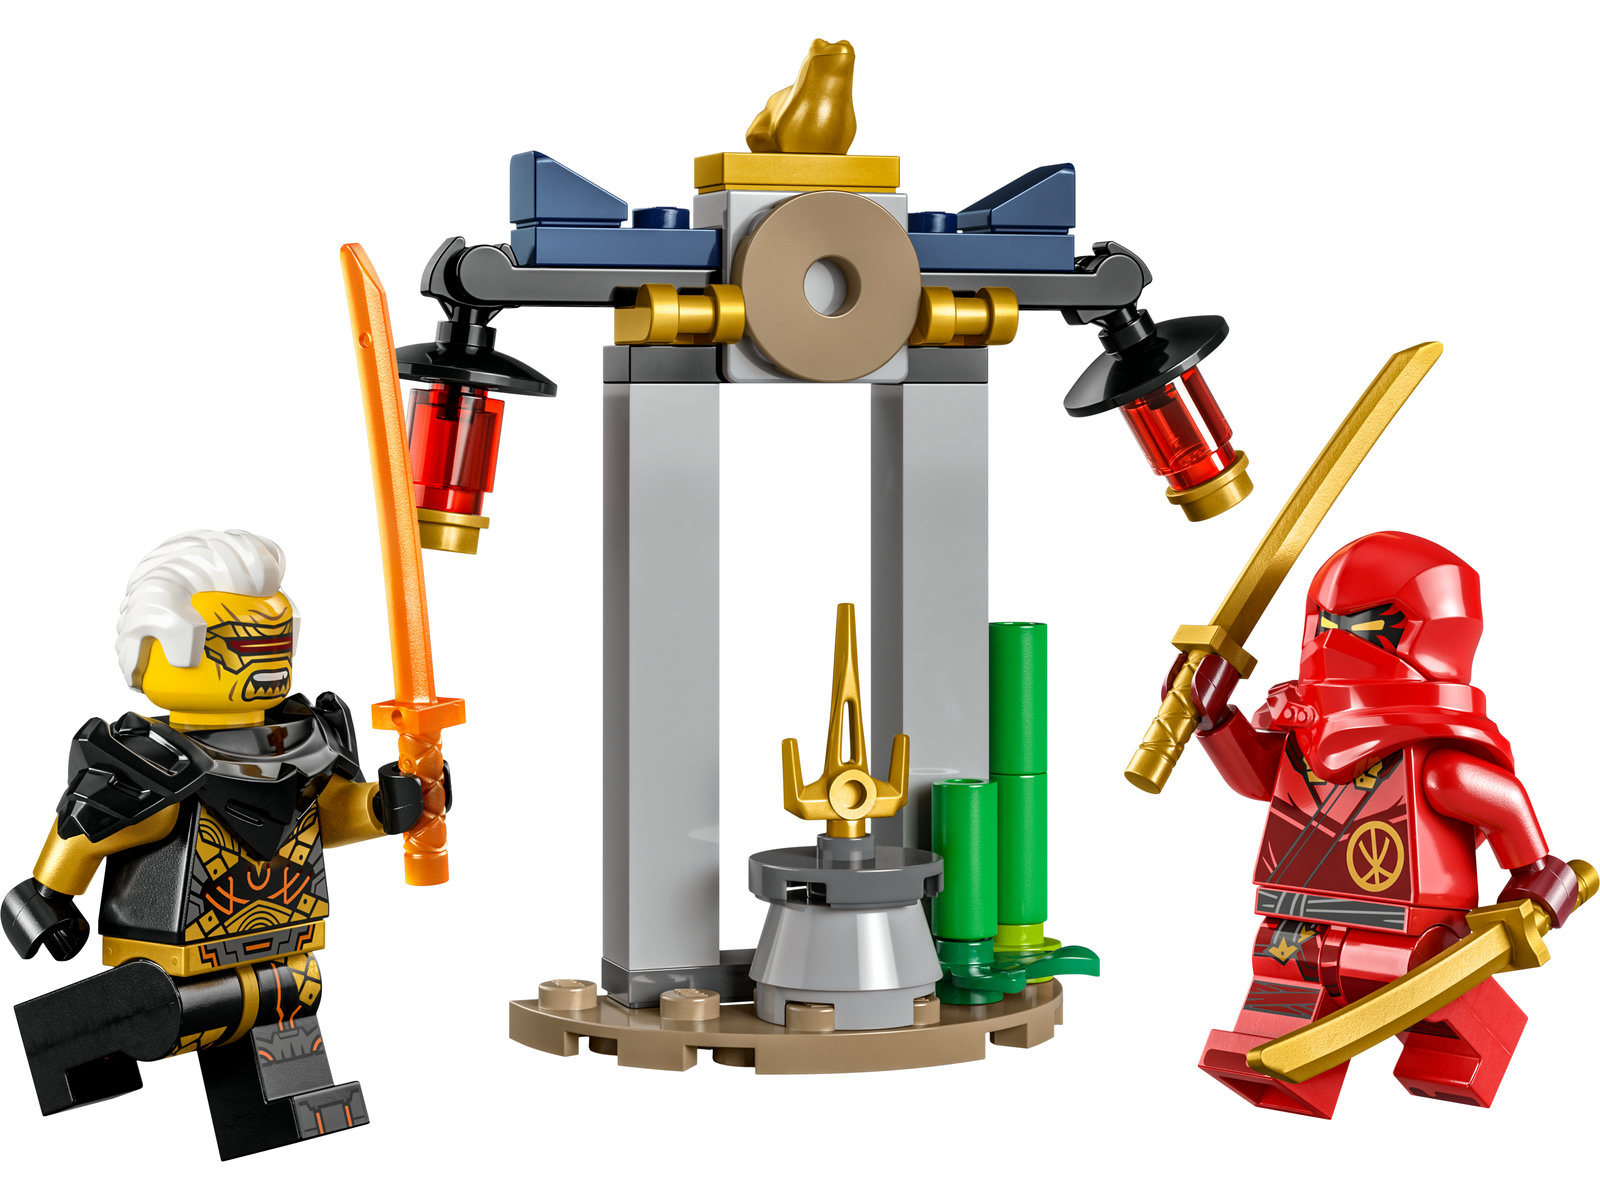 LEGO® Ninjago 30650 - Kais und Raptons Duell im Tempel